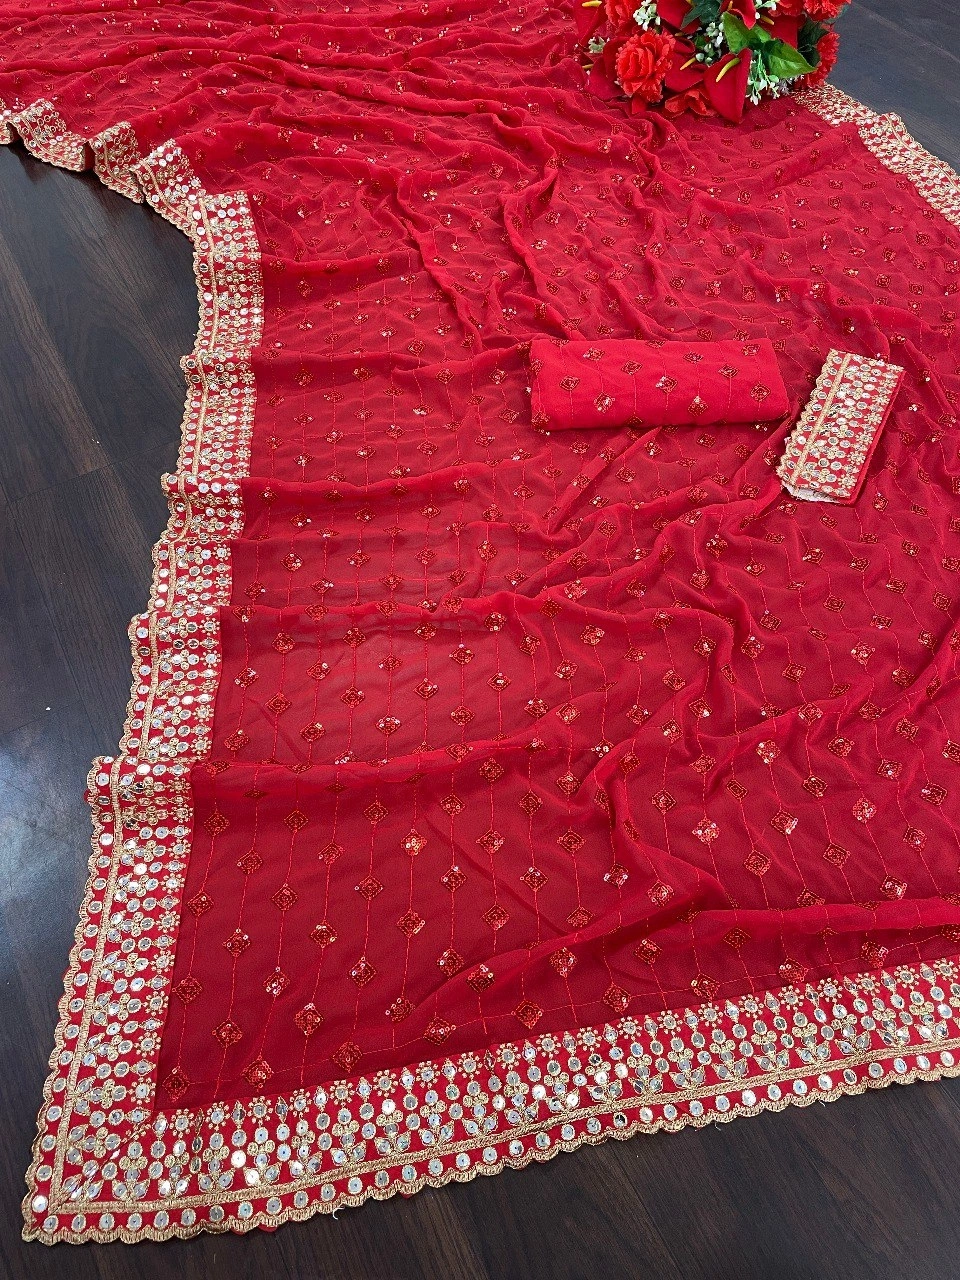 Designer Georgette Red Sequin Saree For Karwa Chauth-3